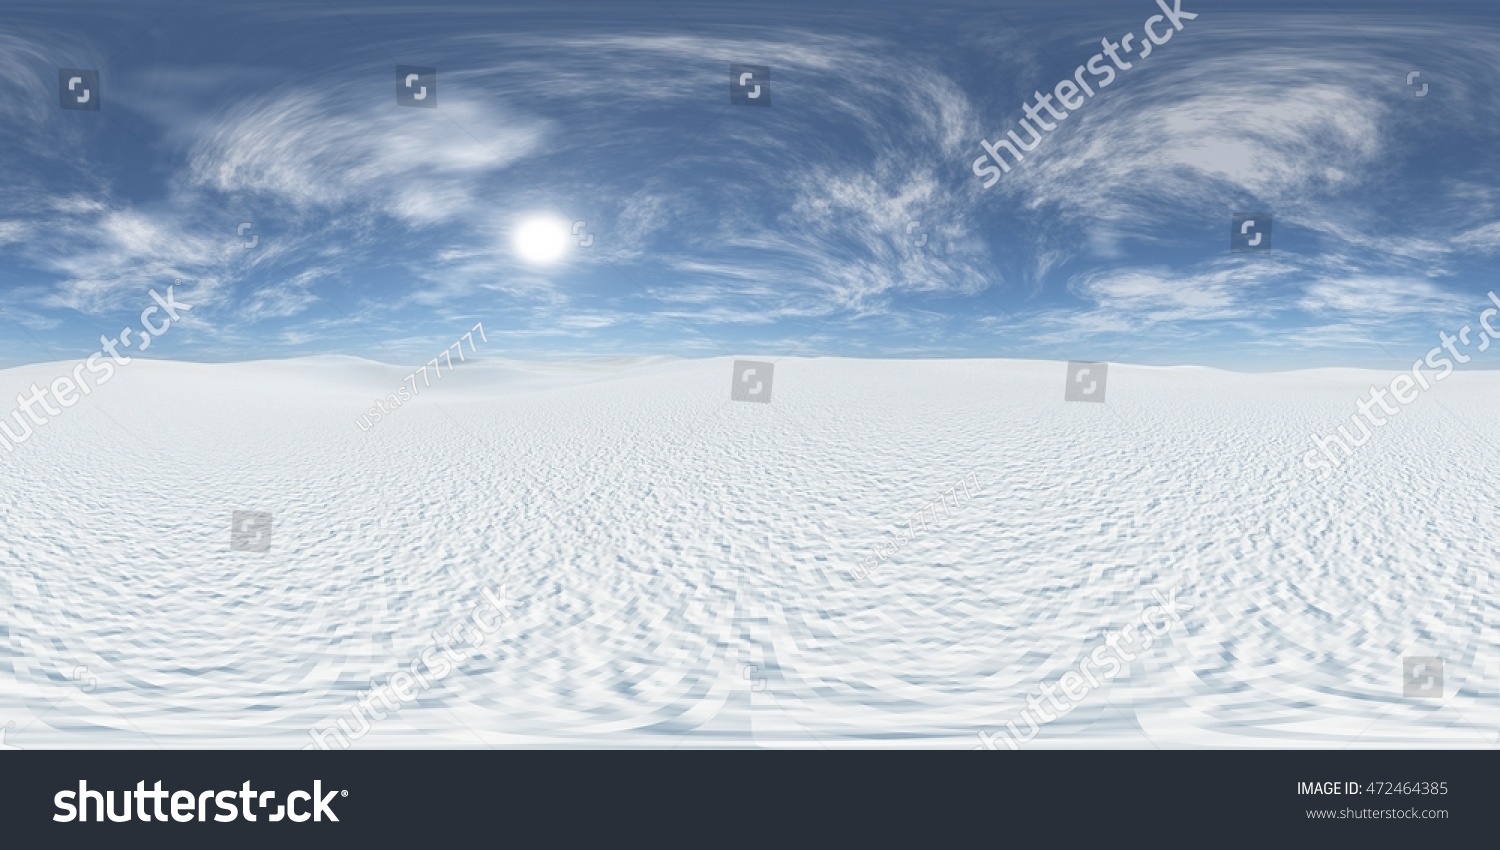 雪の多い砂漠 環境マップ Hdriの地図 等角投影 球状パノラマ 3dレンダリング のイラスト素材